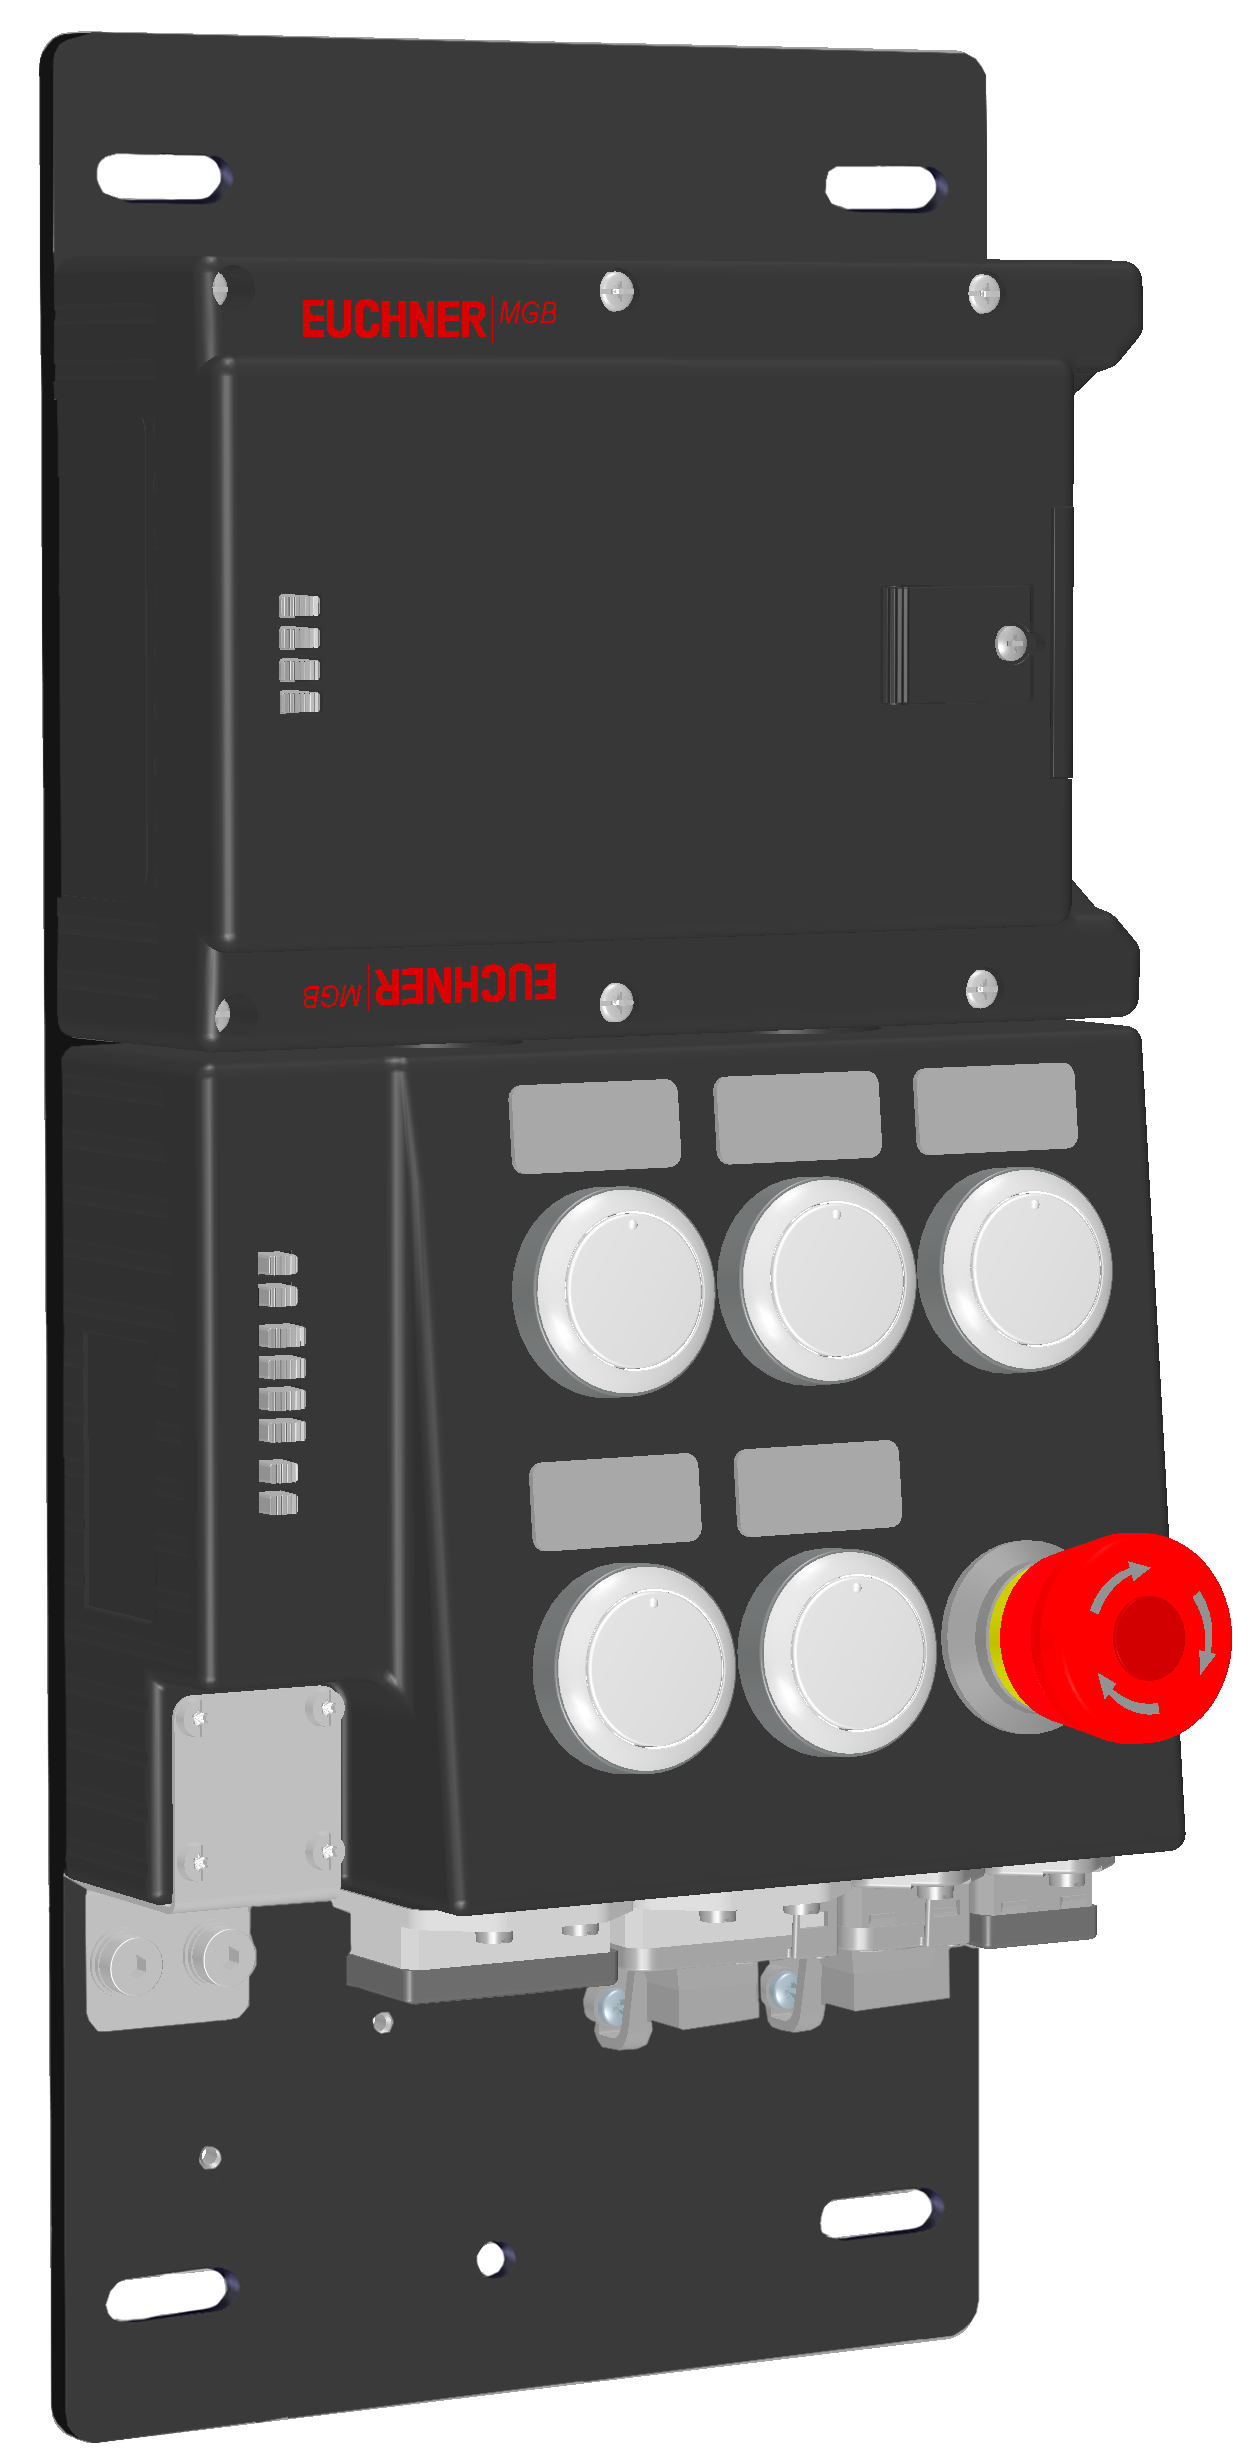 Vyhodnocovací moduly s jištěním ochranného krytu MGB-L2B-PNA-R-121836  (Obj. č. 121836)